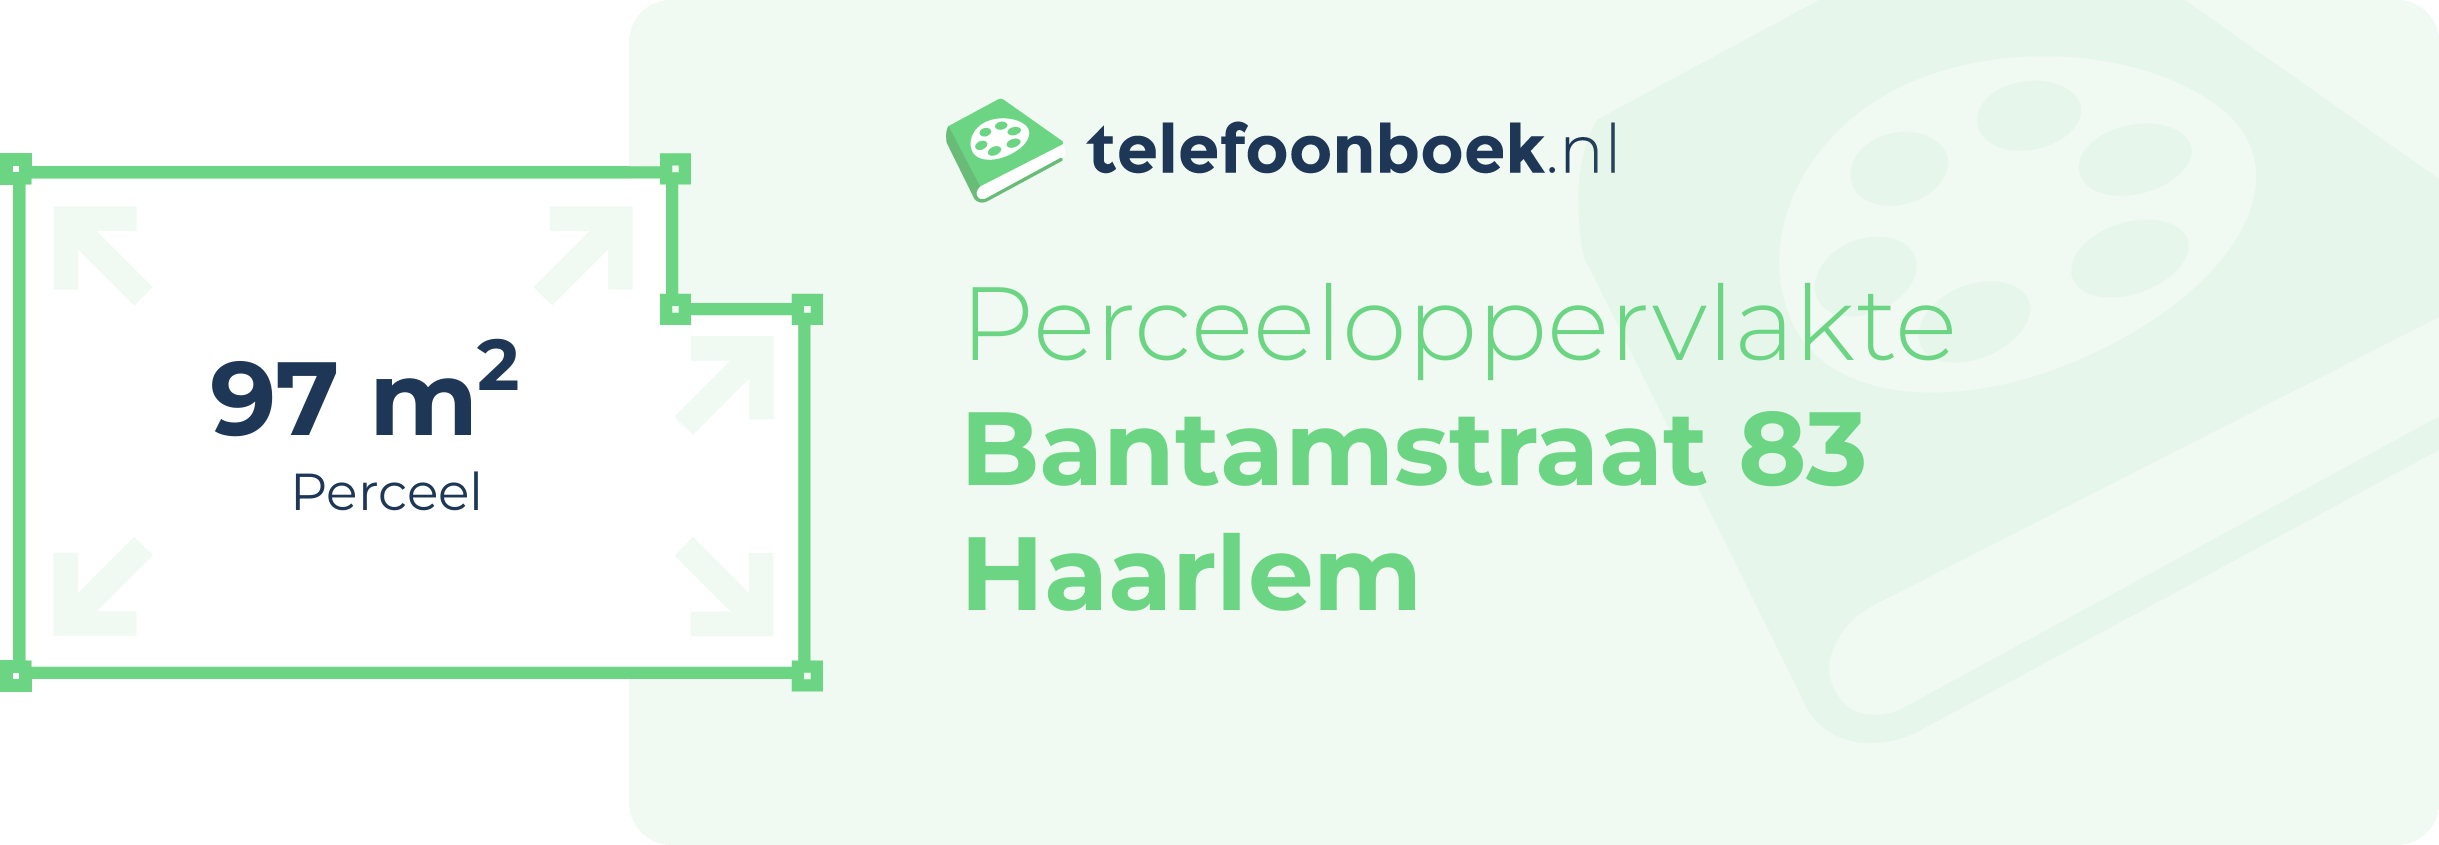 Perceeloppervlakte Bantamstraat 83 Haarlem